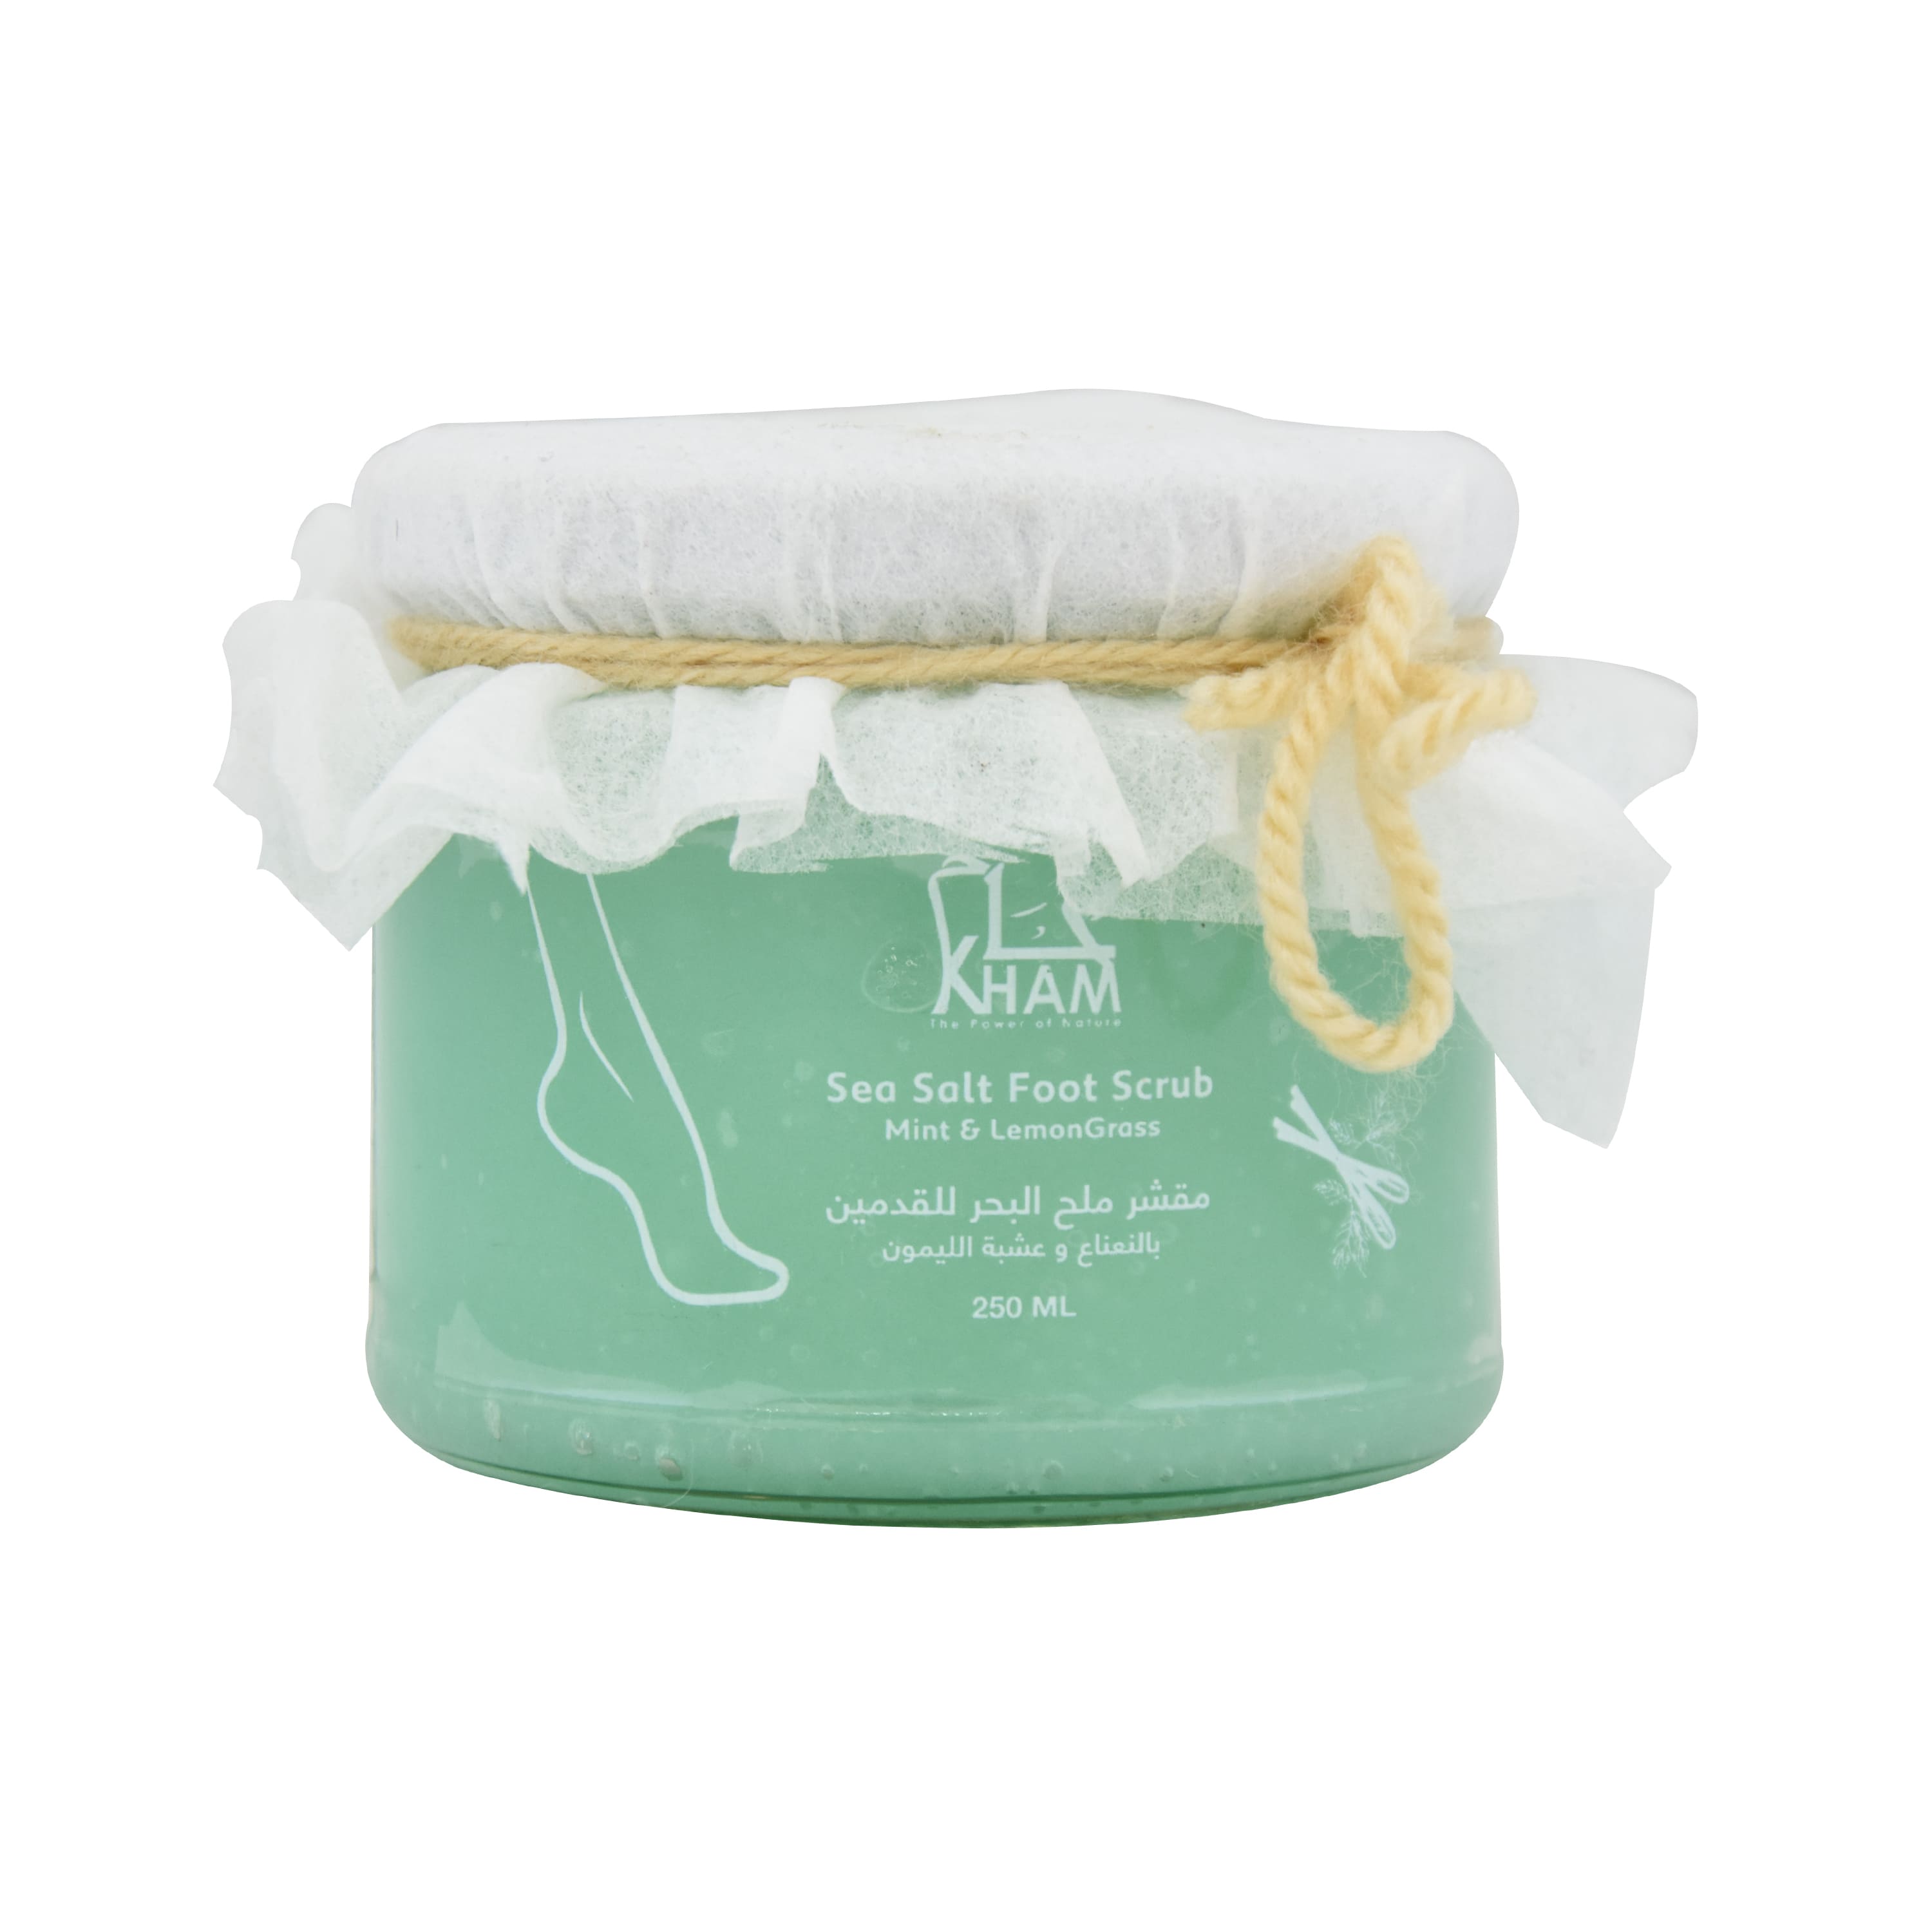 Kham Sea Salt Foot Scrub (250 ml) with mint & lemongrass